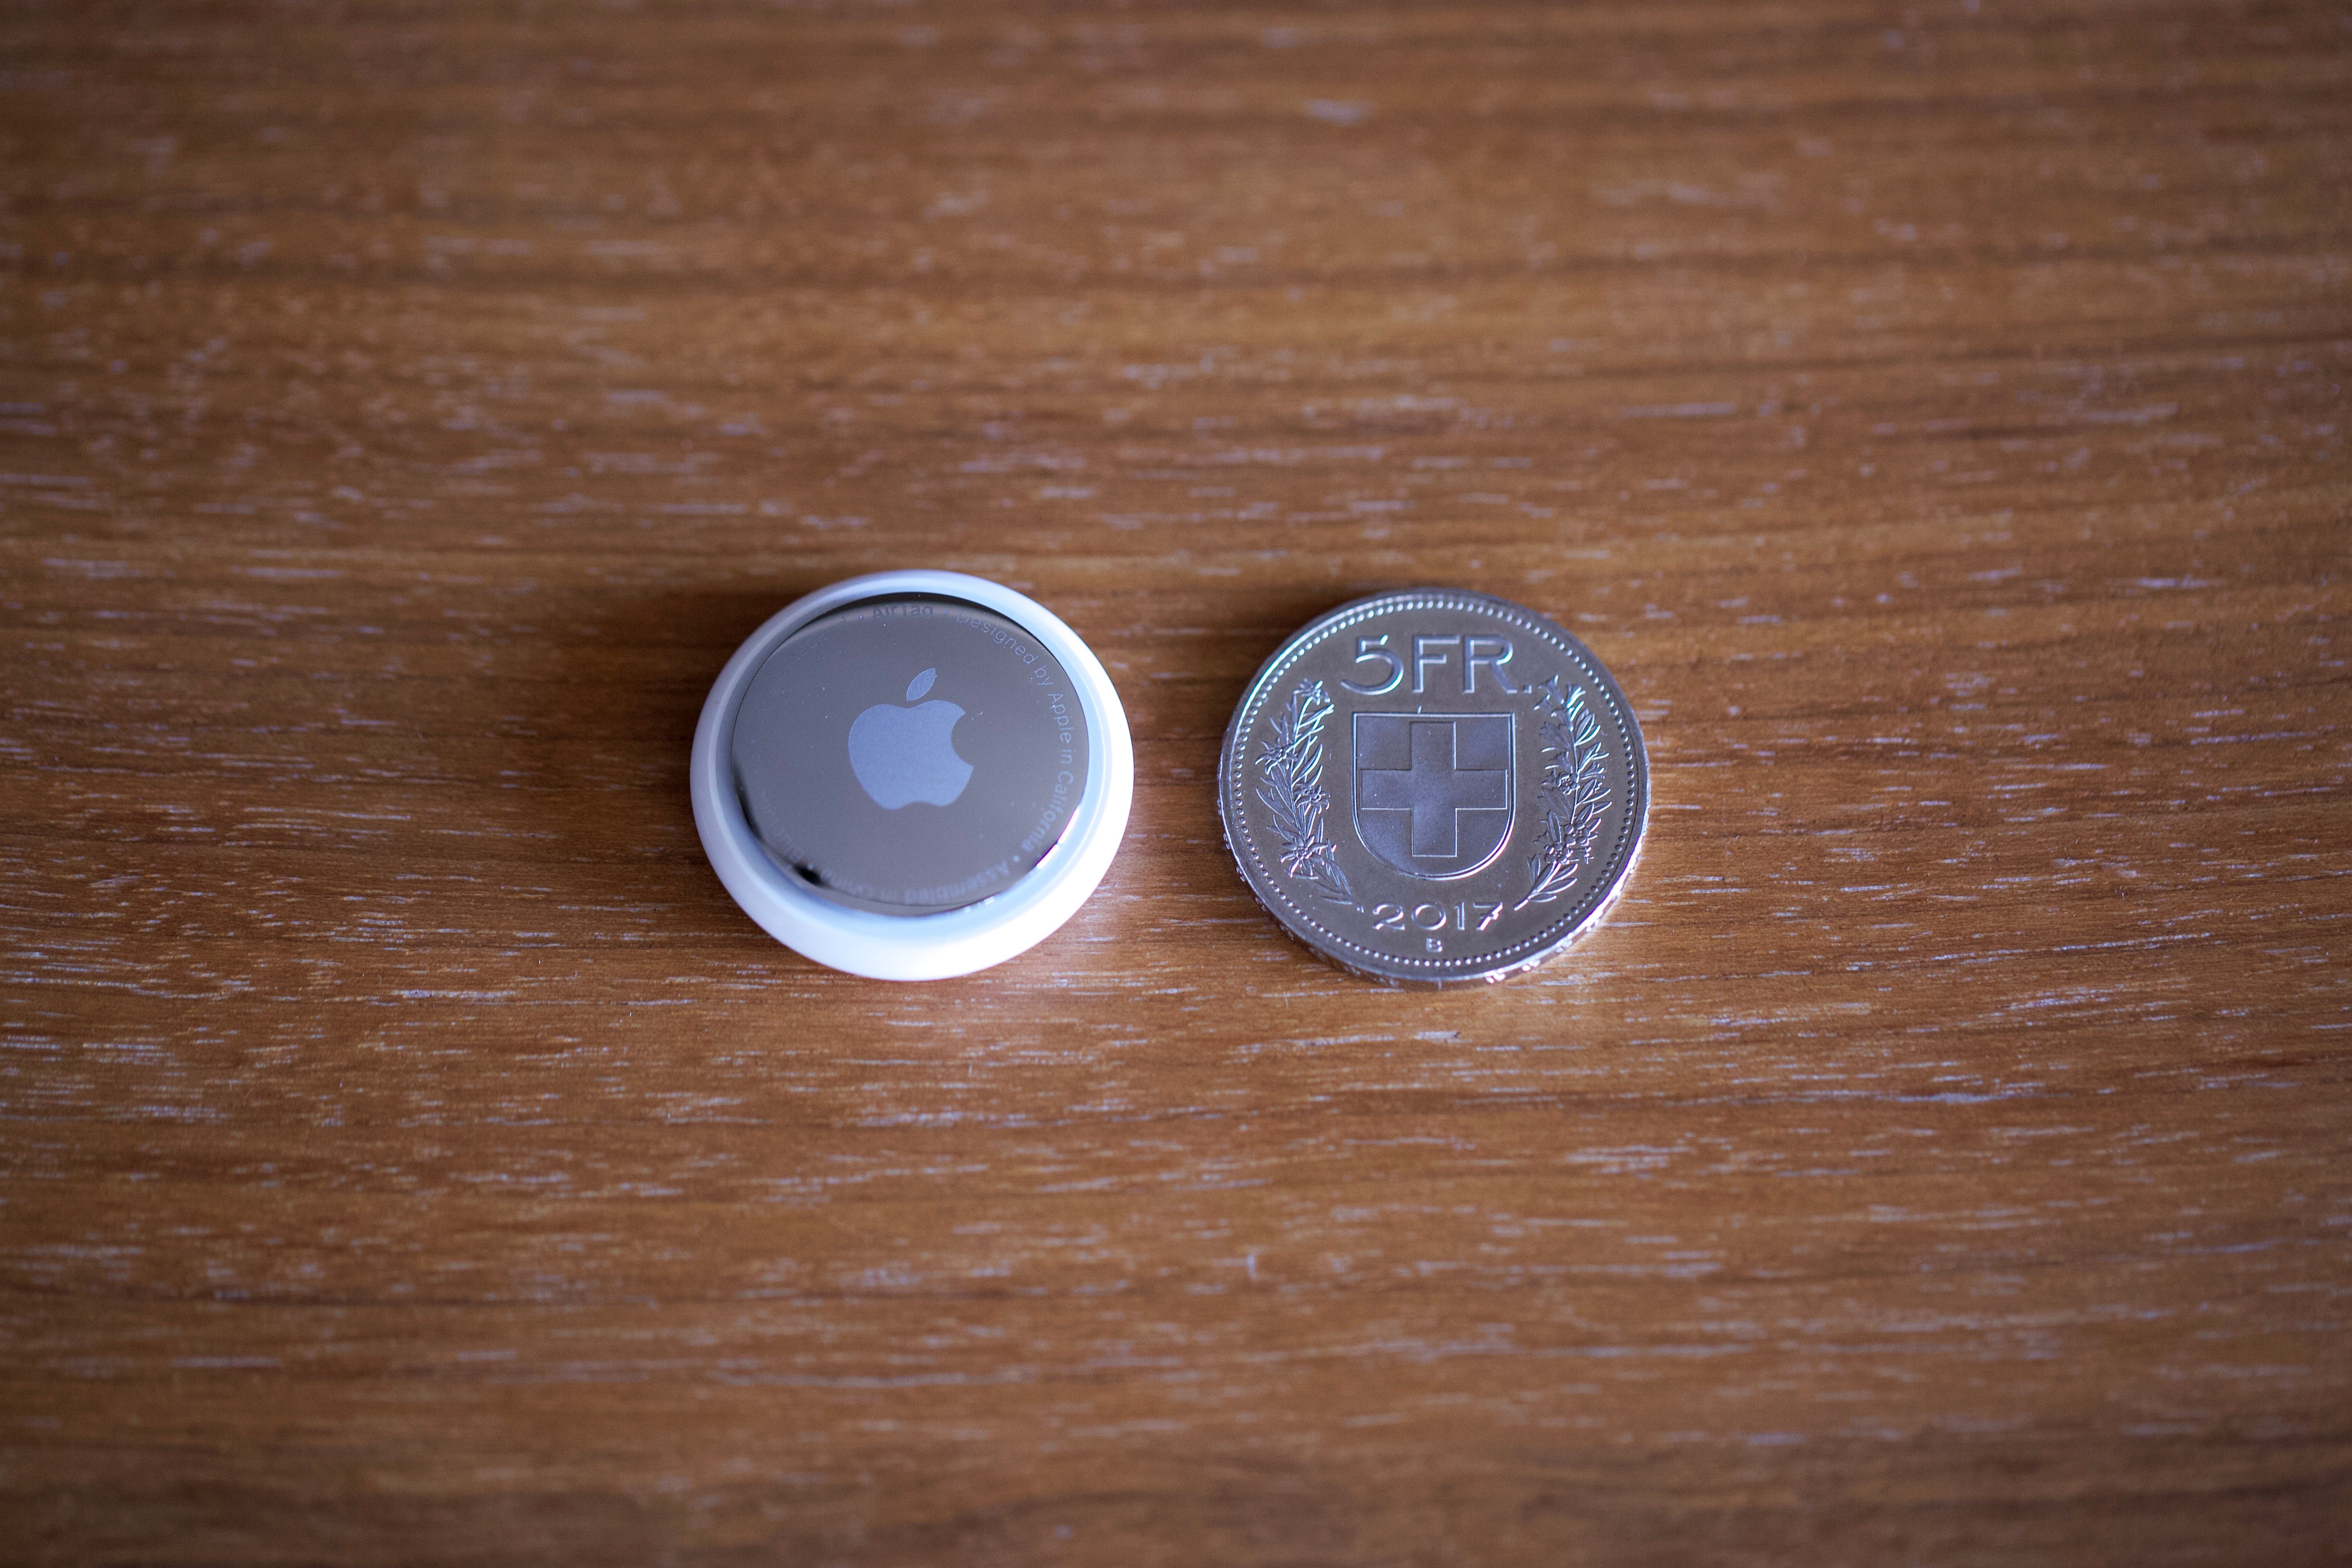 Das Tracking-Device von Apple hat einen Durchmesser von gut 3 Zentimeter.